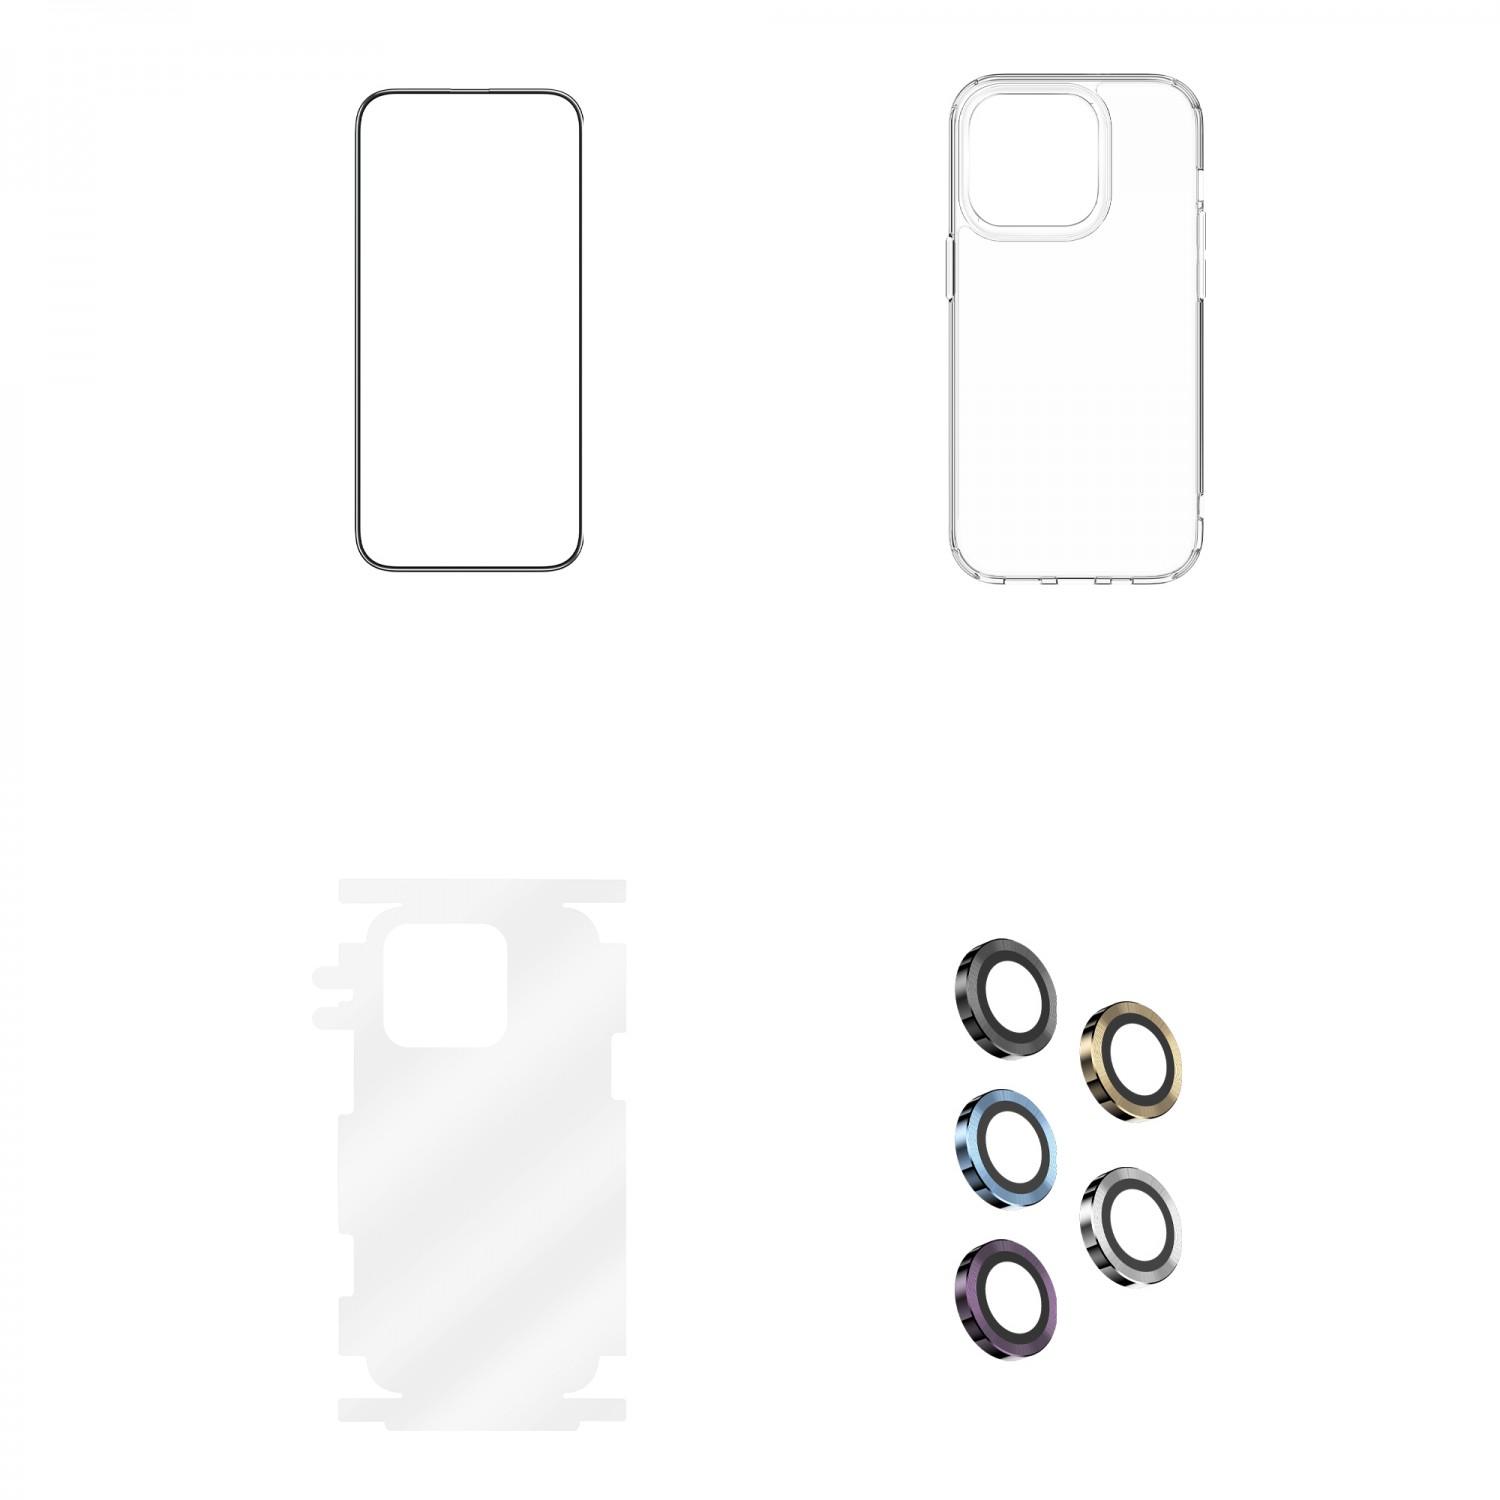 بكج حماية ايفون 14 برو ماكس فضي جرين Green 4 in 1 360° HD Protection Pack for iPhone 14 Pro Max Silver - cG9zdDoxMzc3NDA2